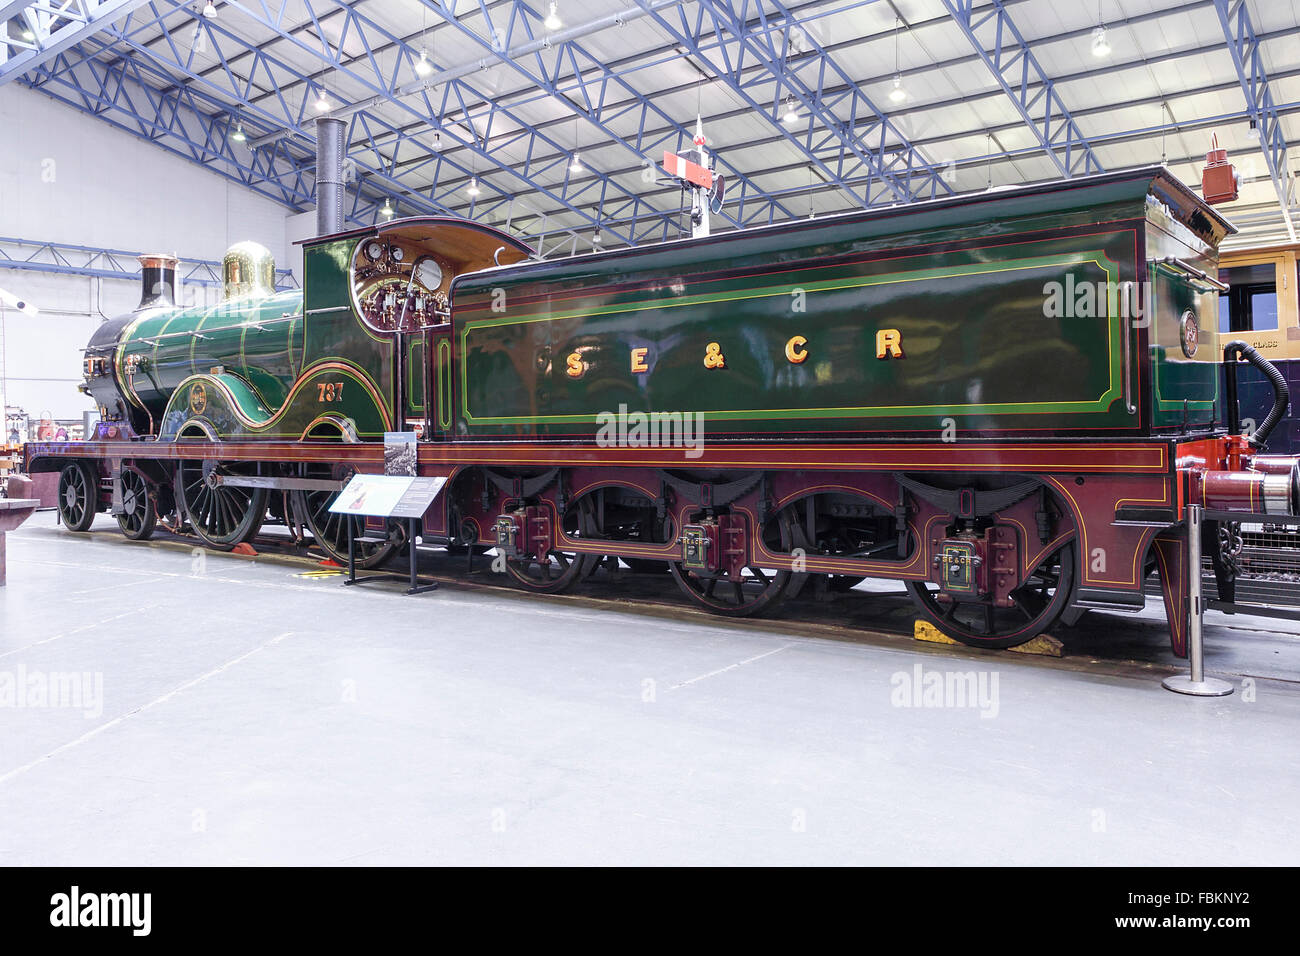 Immagini del centro storico di locomozione, moderni motori ferroviari e passato meraviglie ingegneristiche al National Railway Museum di York, UK. Foto Stock